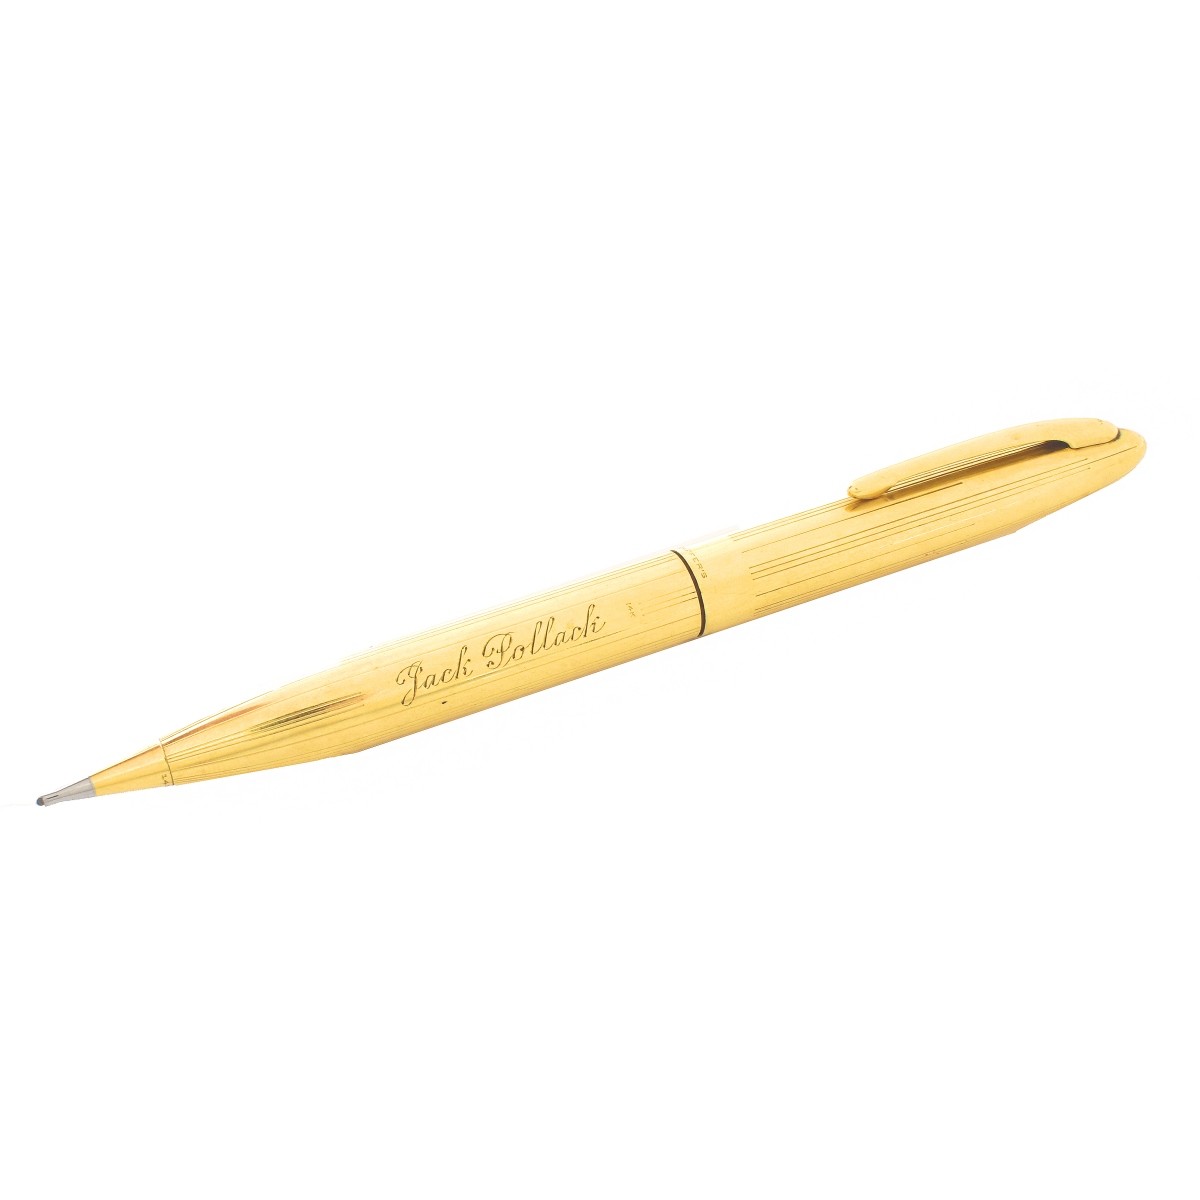 Vintage Sheaffer's 14K Gold Pencil